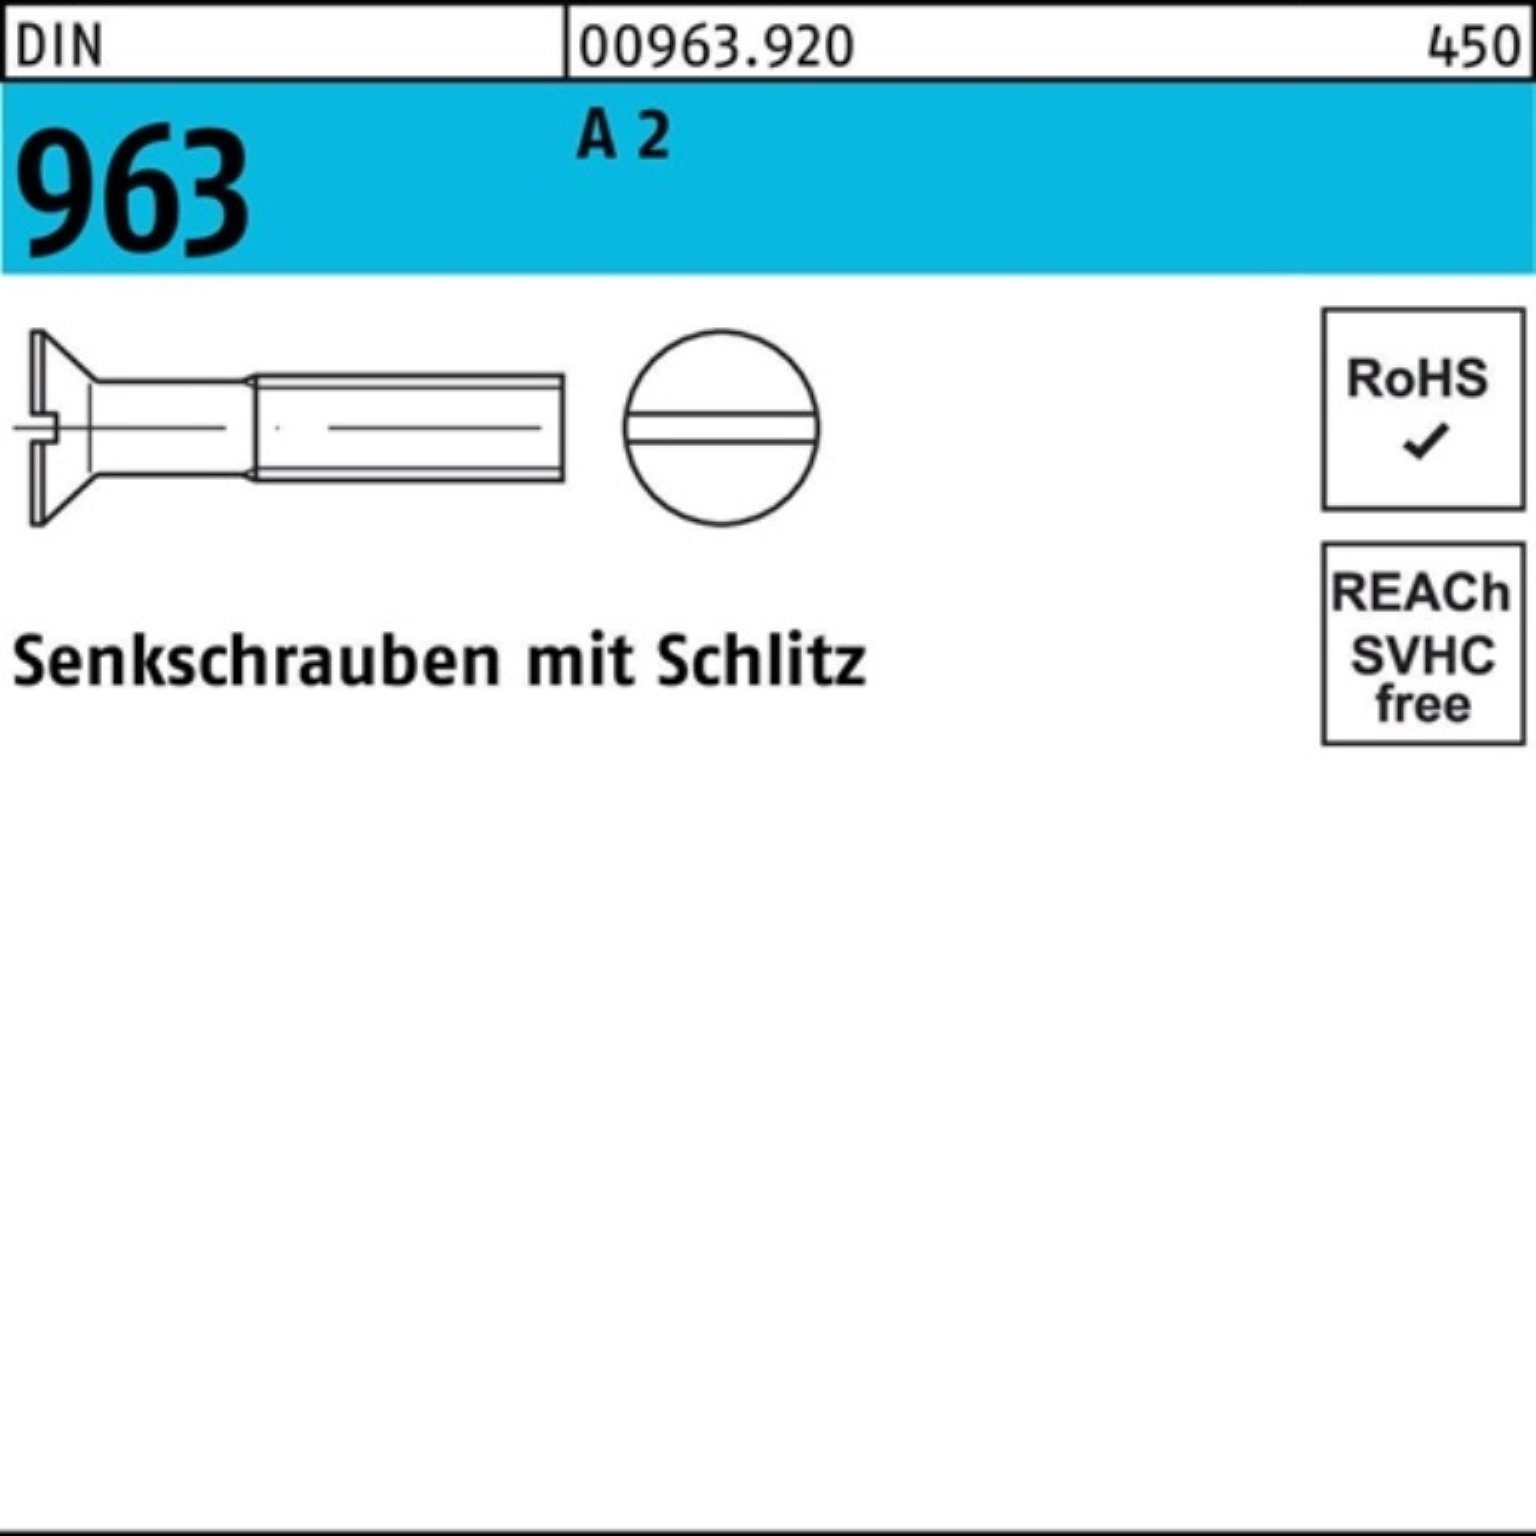 Senkschraube Reyher 2 Stück 1000er DIN Senkschraube M2,5x Schlitz 8 Pack DIN 1000 9 963 A